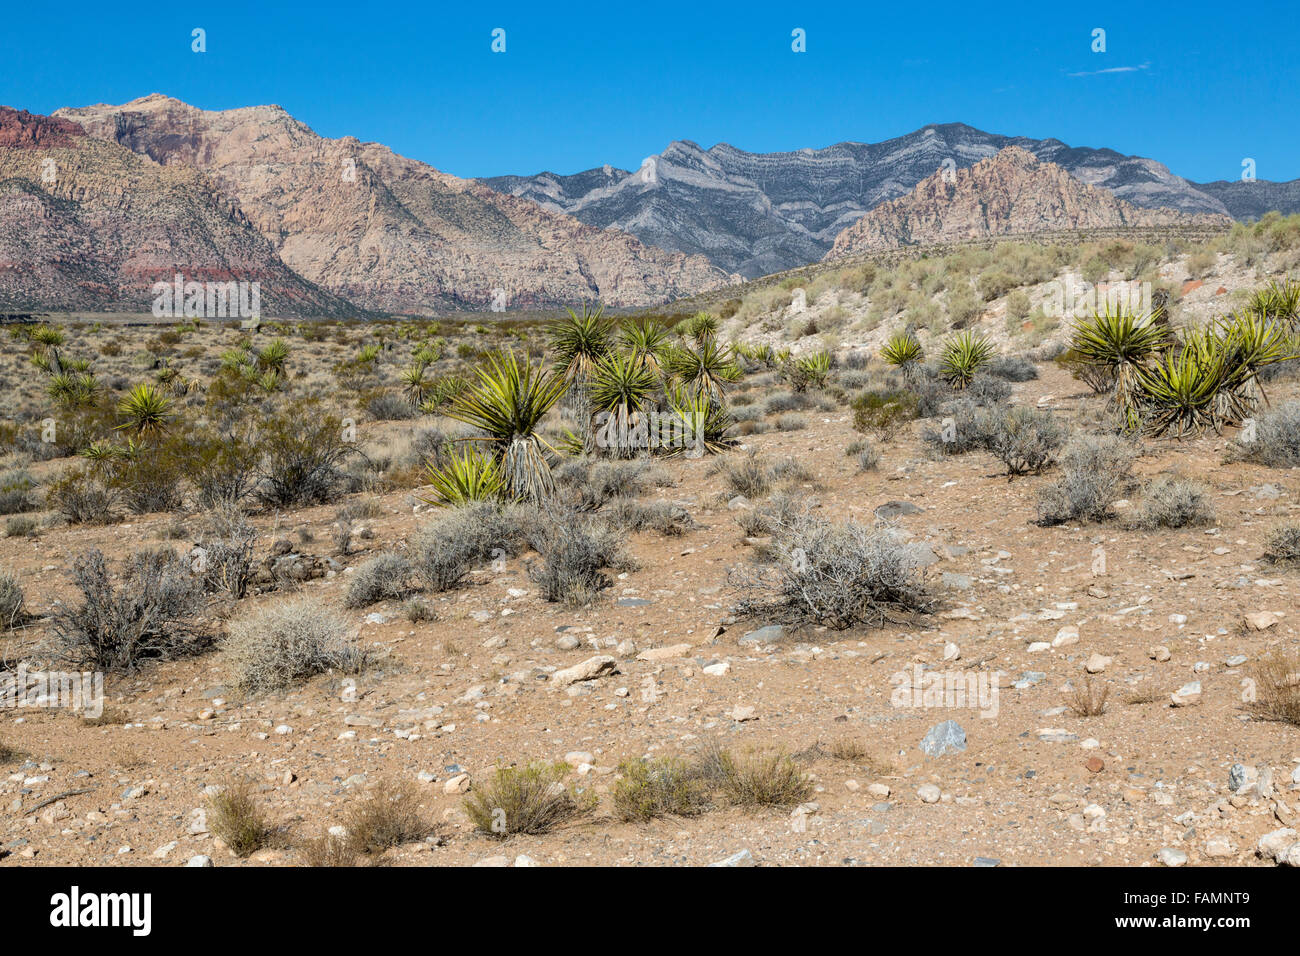 El Red Rock Canyon, en el estado de Nevada. La yuca de Mojave en oriente, empuje Keystone de piedra caliza gris en el fondo. Foto de stock